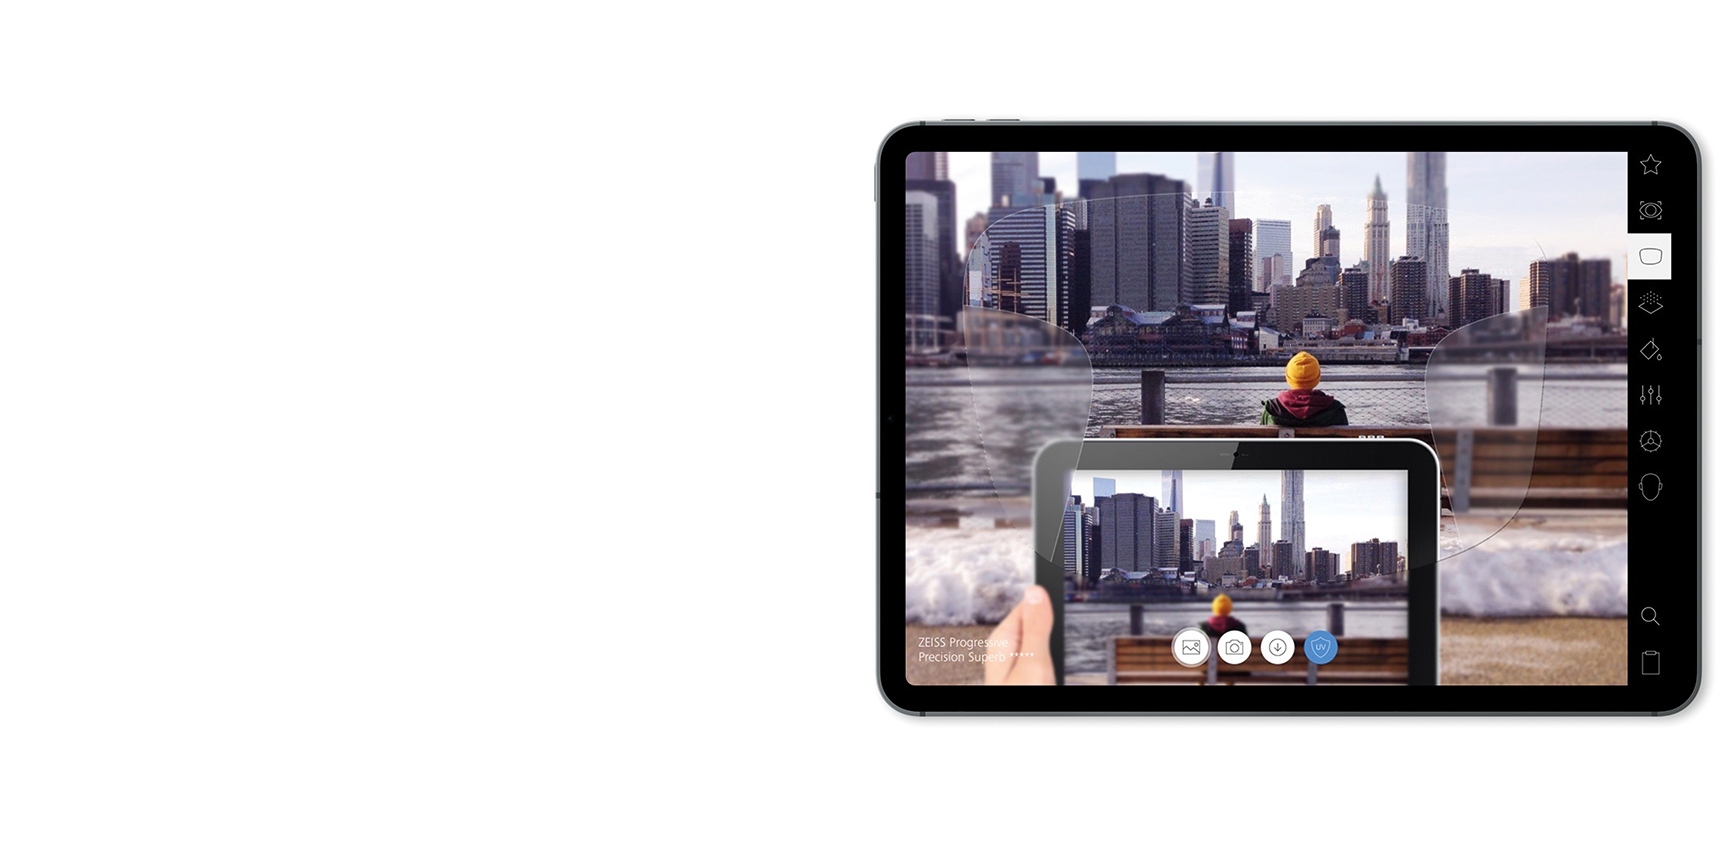 ZEISS brillenglasdemonstratie op de iPad in AR (Augmented Reality).